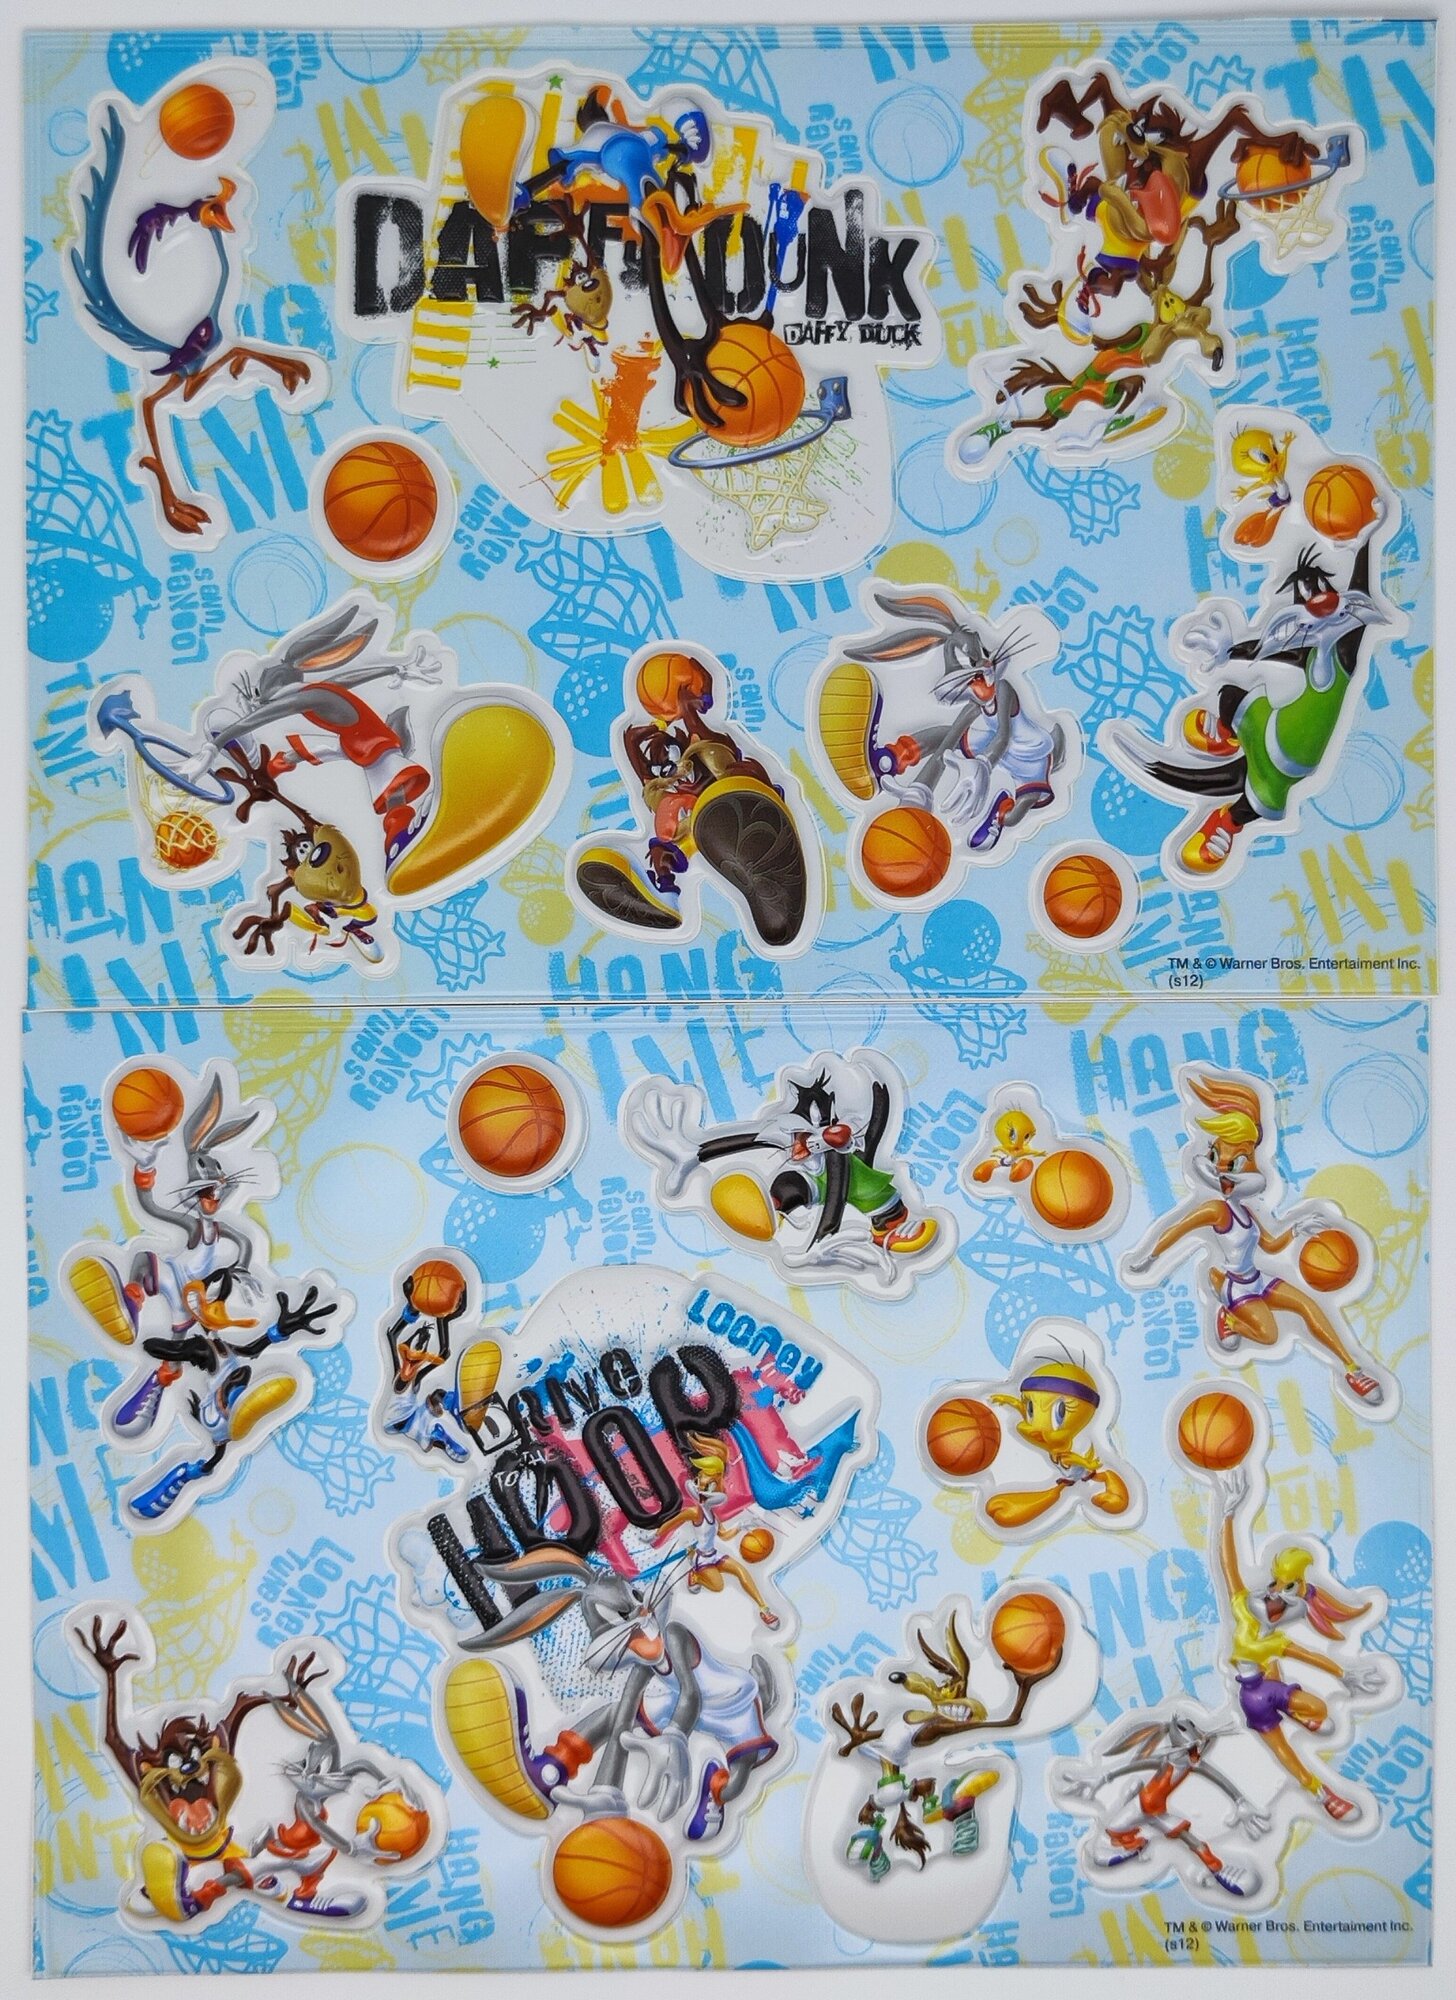 Наклейки объемные для детей / Стикеры 3D cупергерои мультфильмов Disney и Warner Bros Looney Tunes (Луни Тюнз)